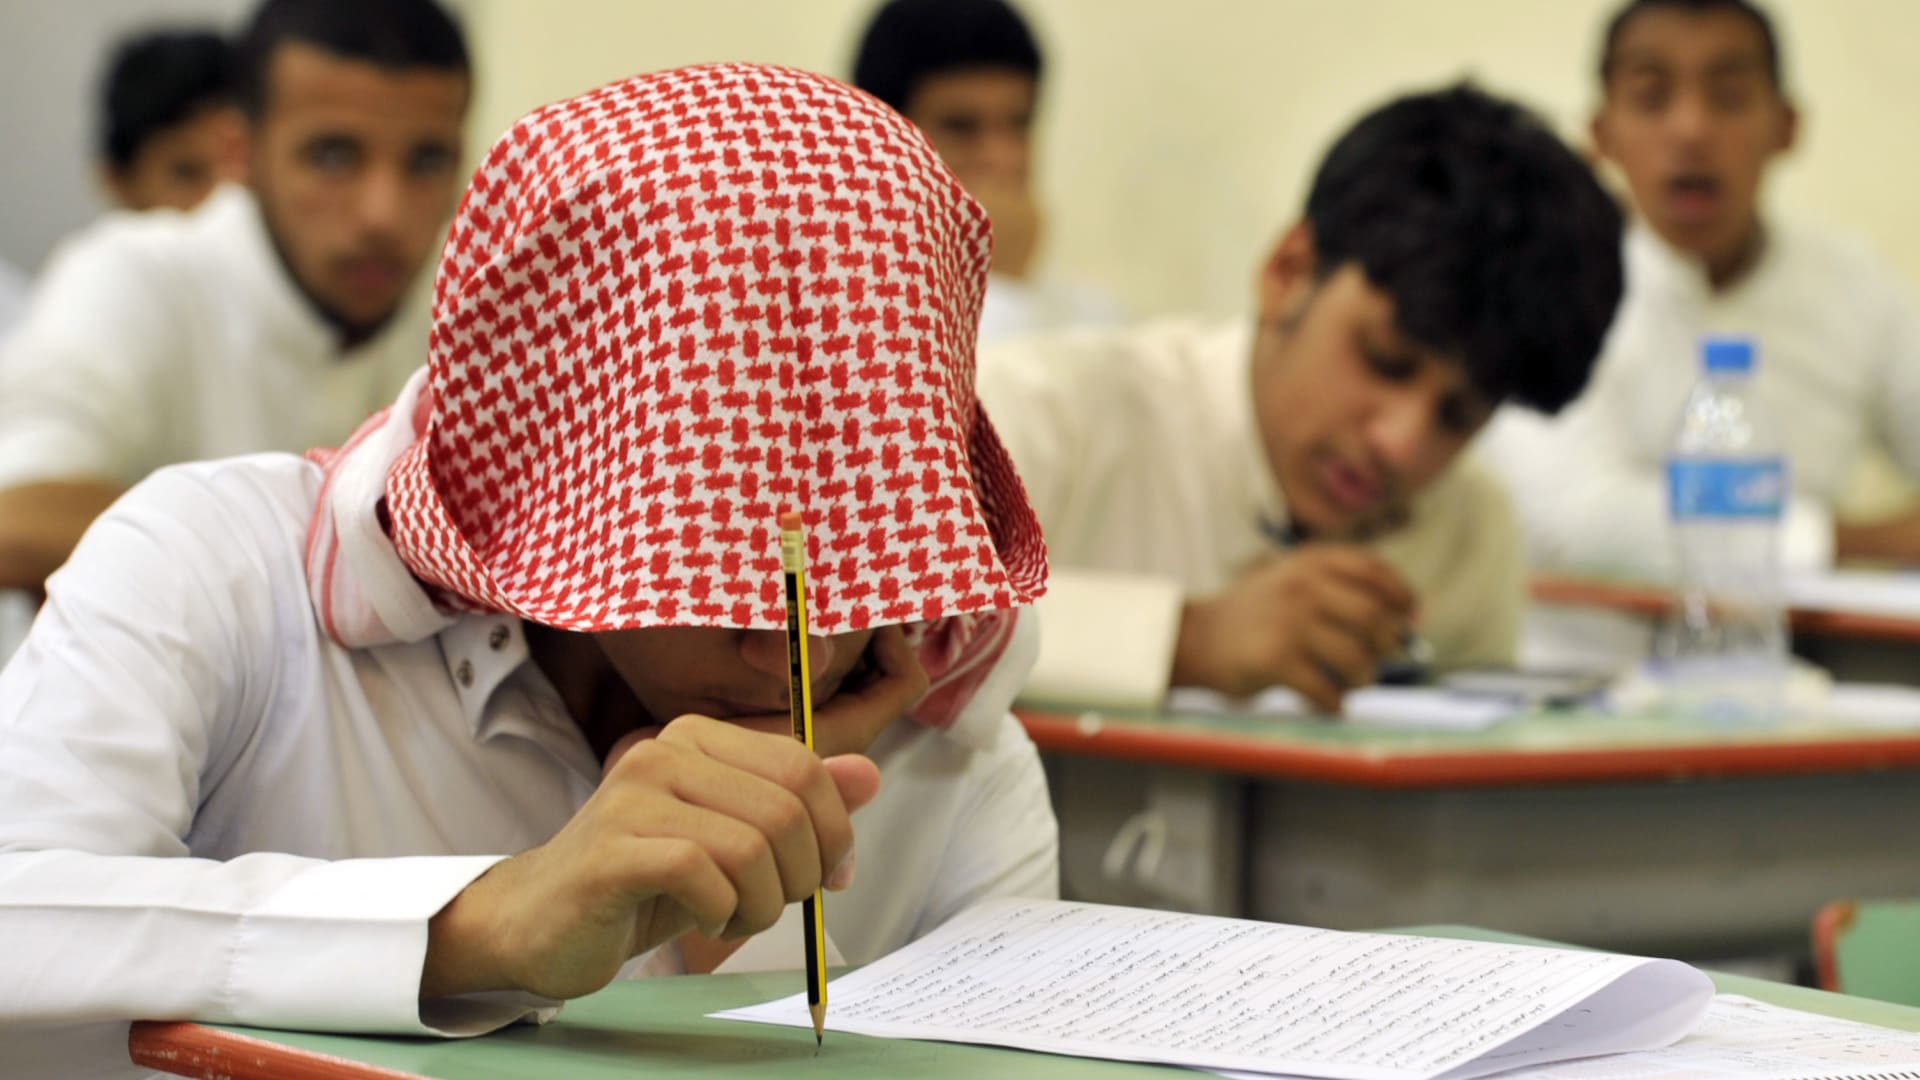 السعودية.. جدل على فيديو معلم يلعب "البلوت" مع تلاميذه والأستاذ يوضح موقفه